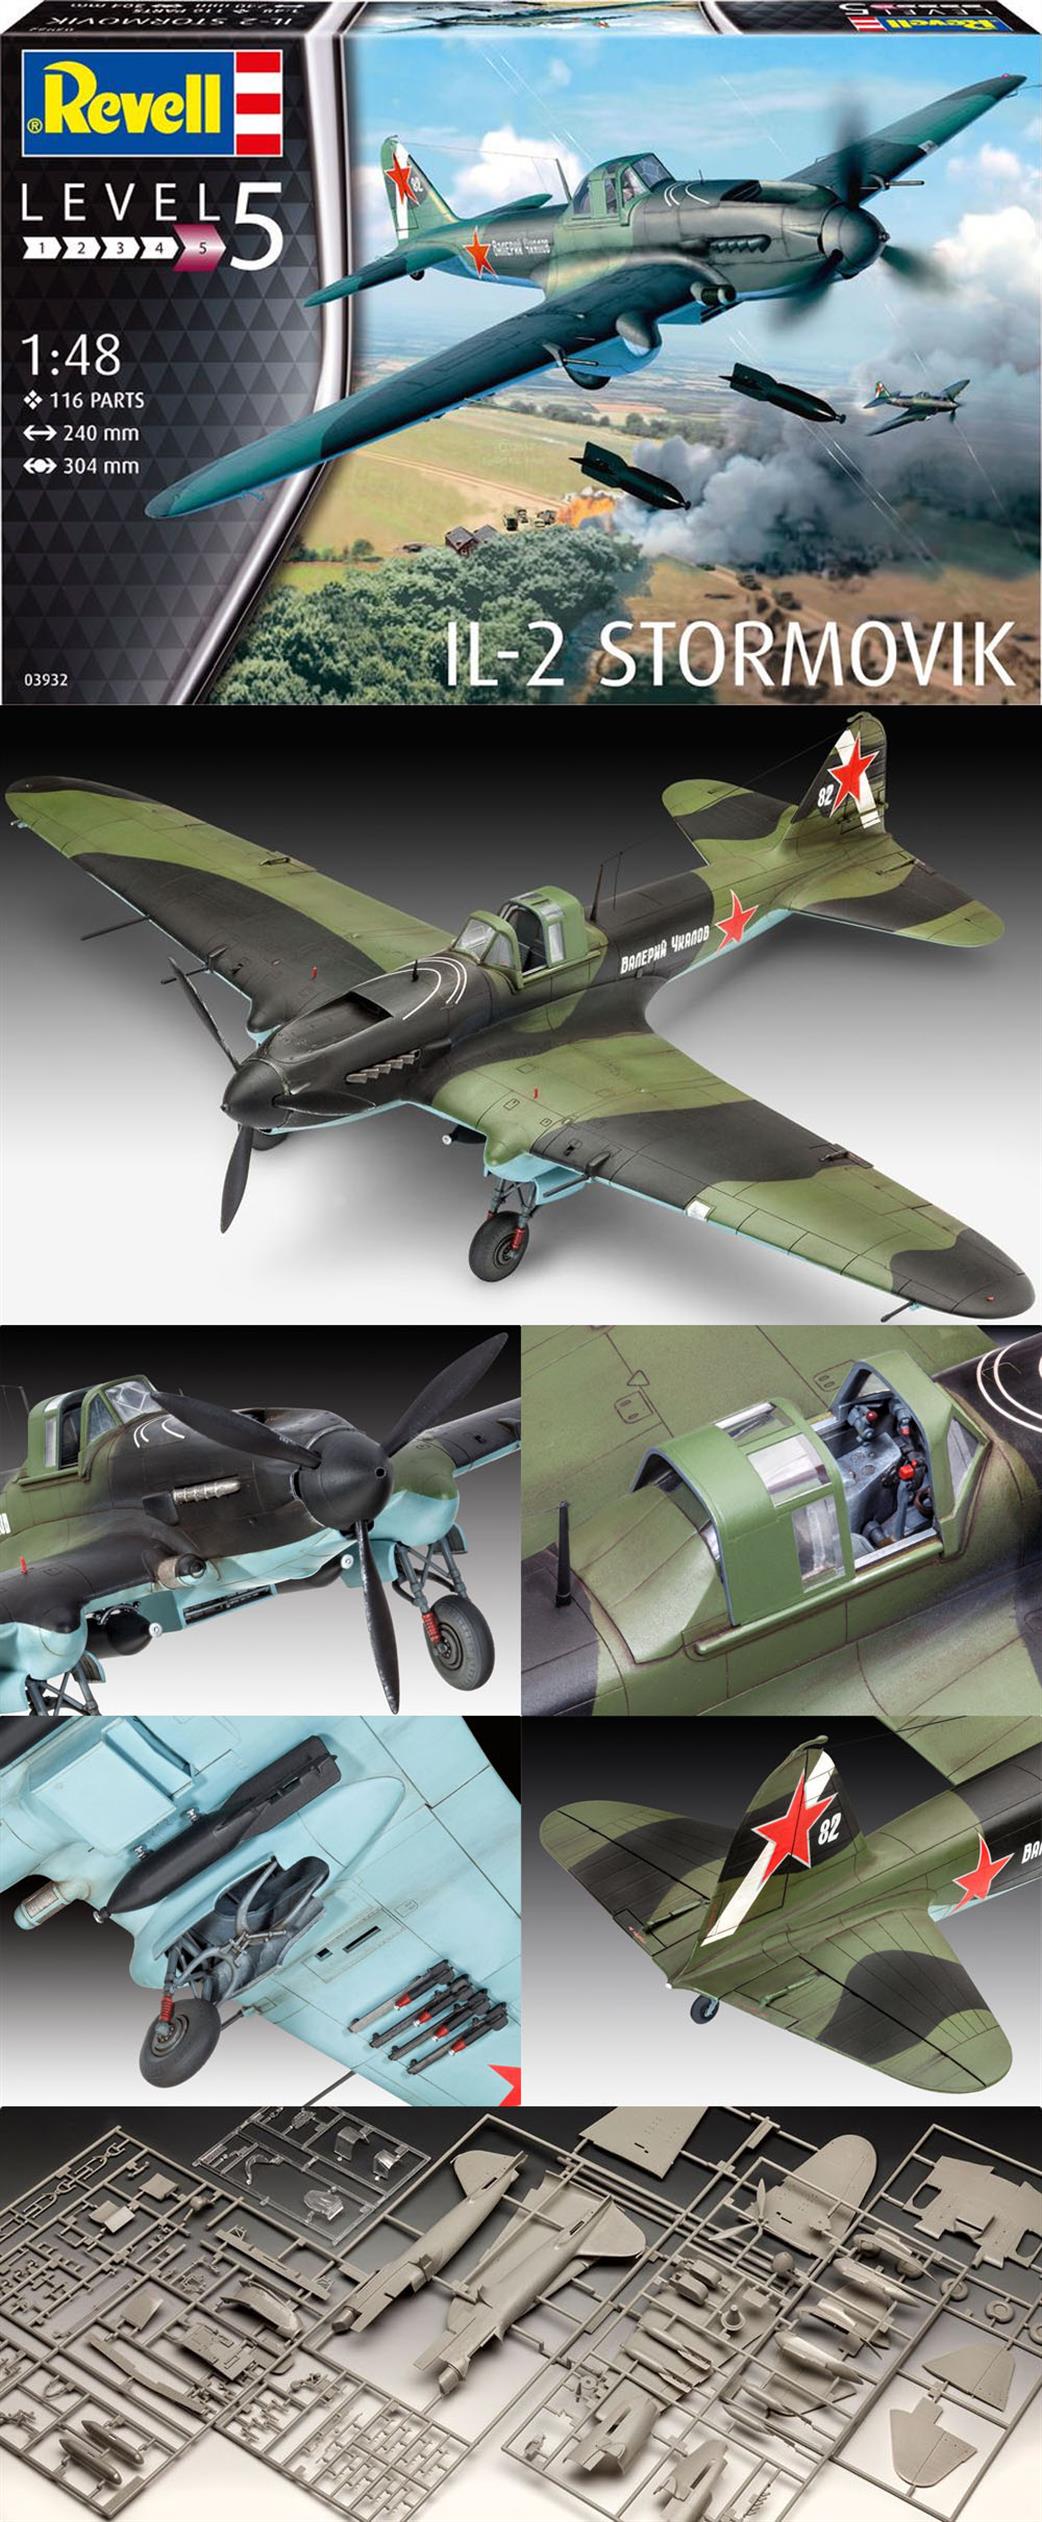 Revell 1/48 03932 IL-2 Stormovik Fighter Bomber Kit